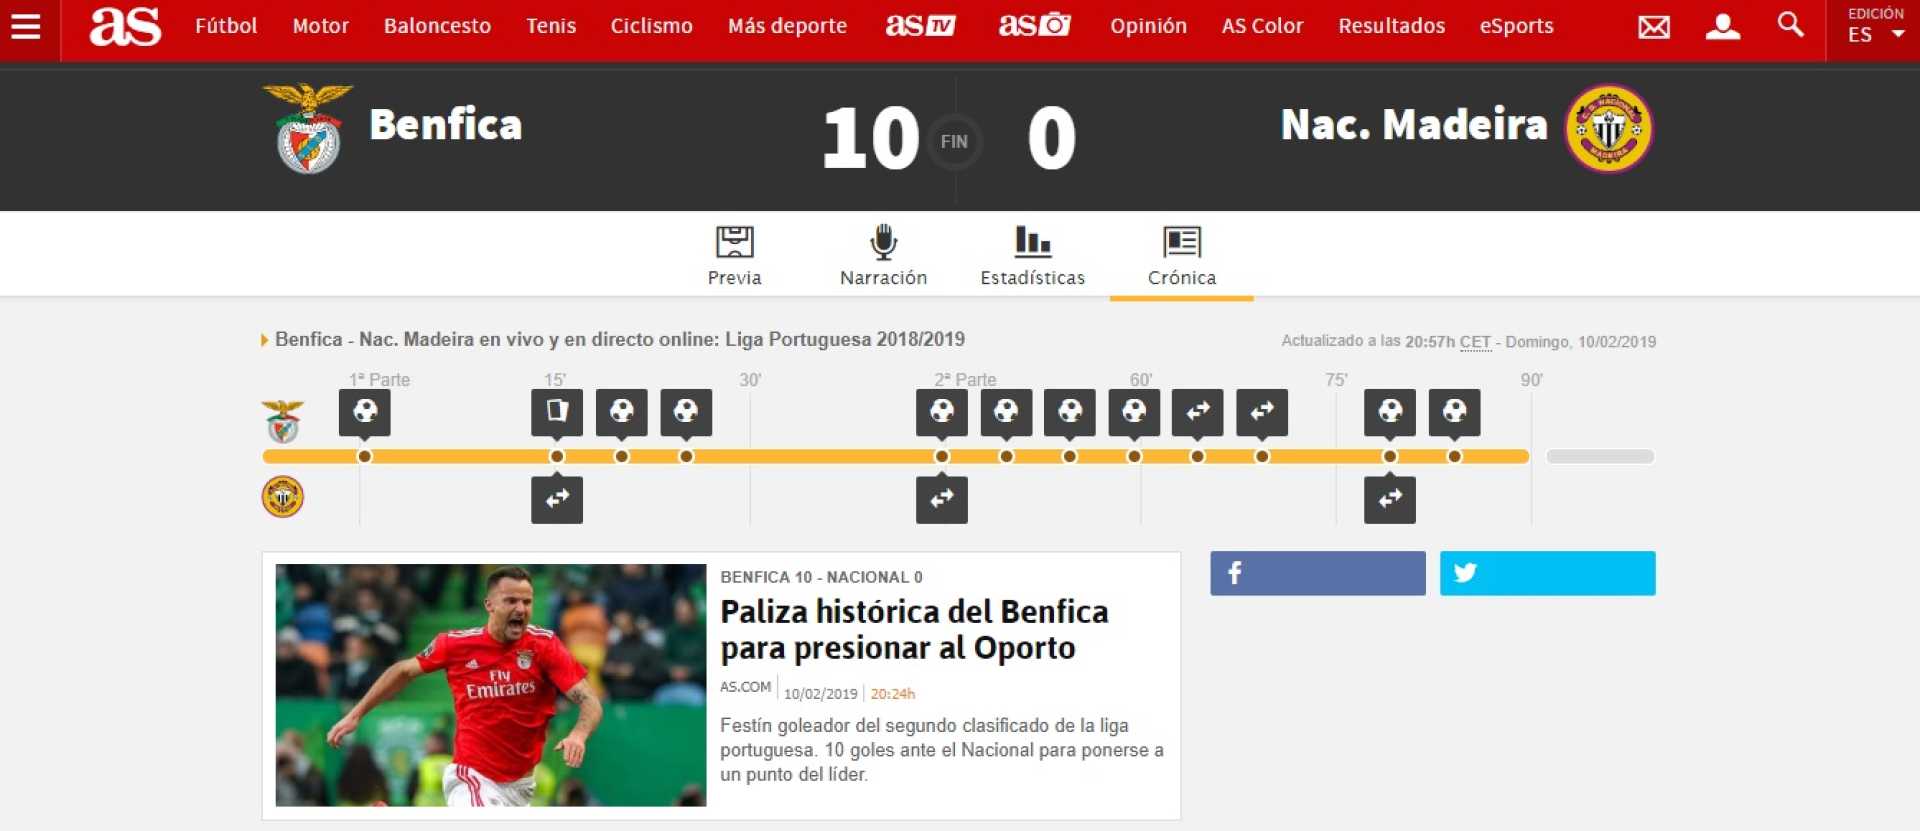 “Águias que foram à caça”. A goleada &#8220;monstruosa&#8221; do Benfica lá fora